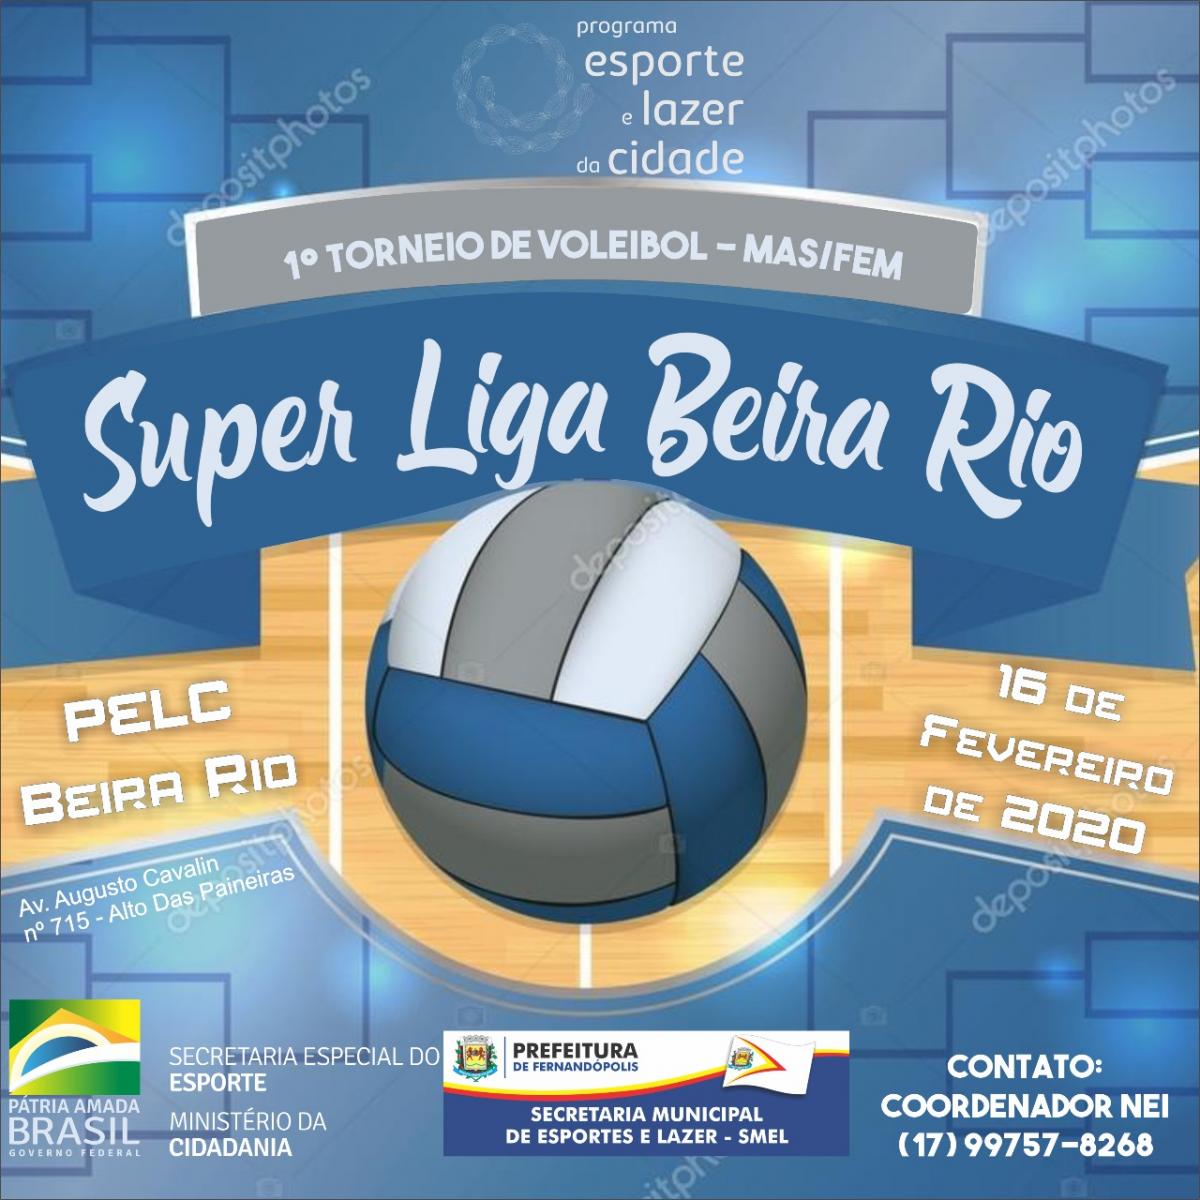 PELC Beira Rio promove torneio de voleibol